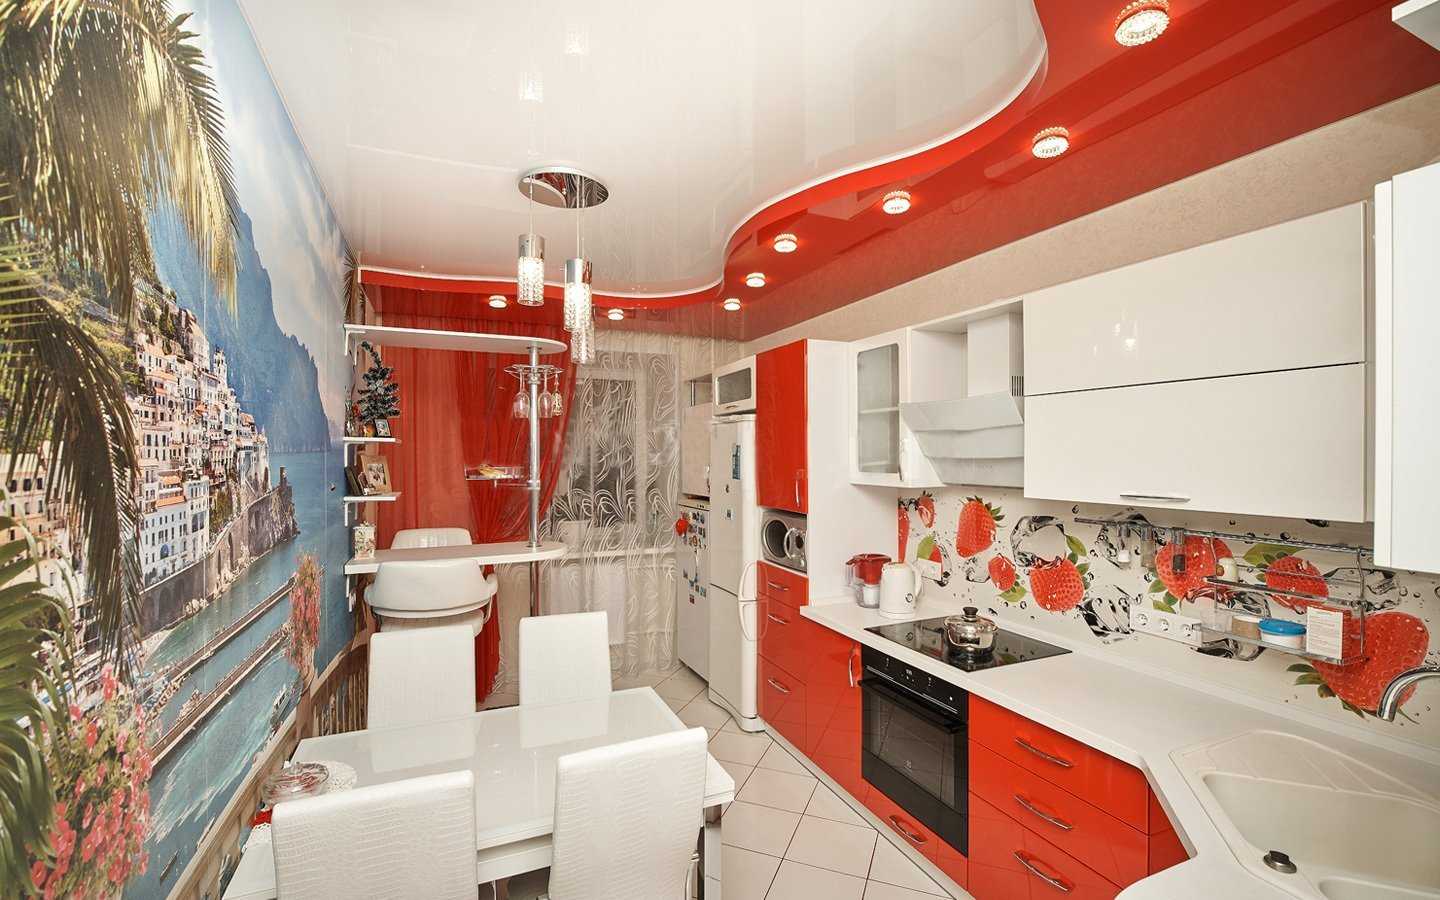 Потолок в кухне, совмещенной с гостиной: дизайн, освещение, современный стиль - 22 фото